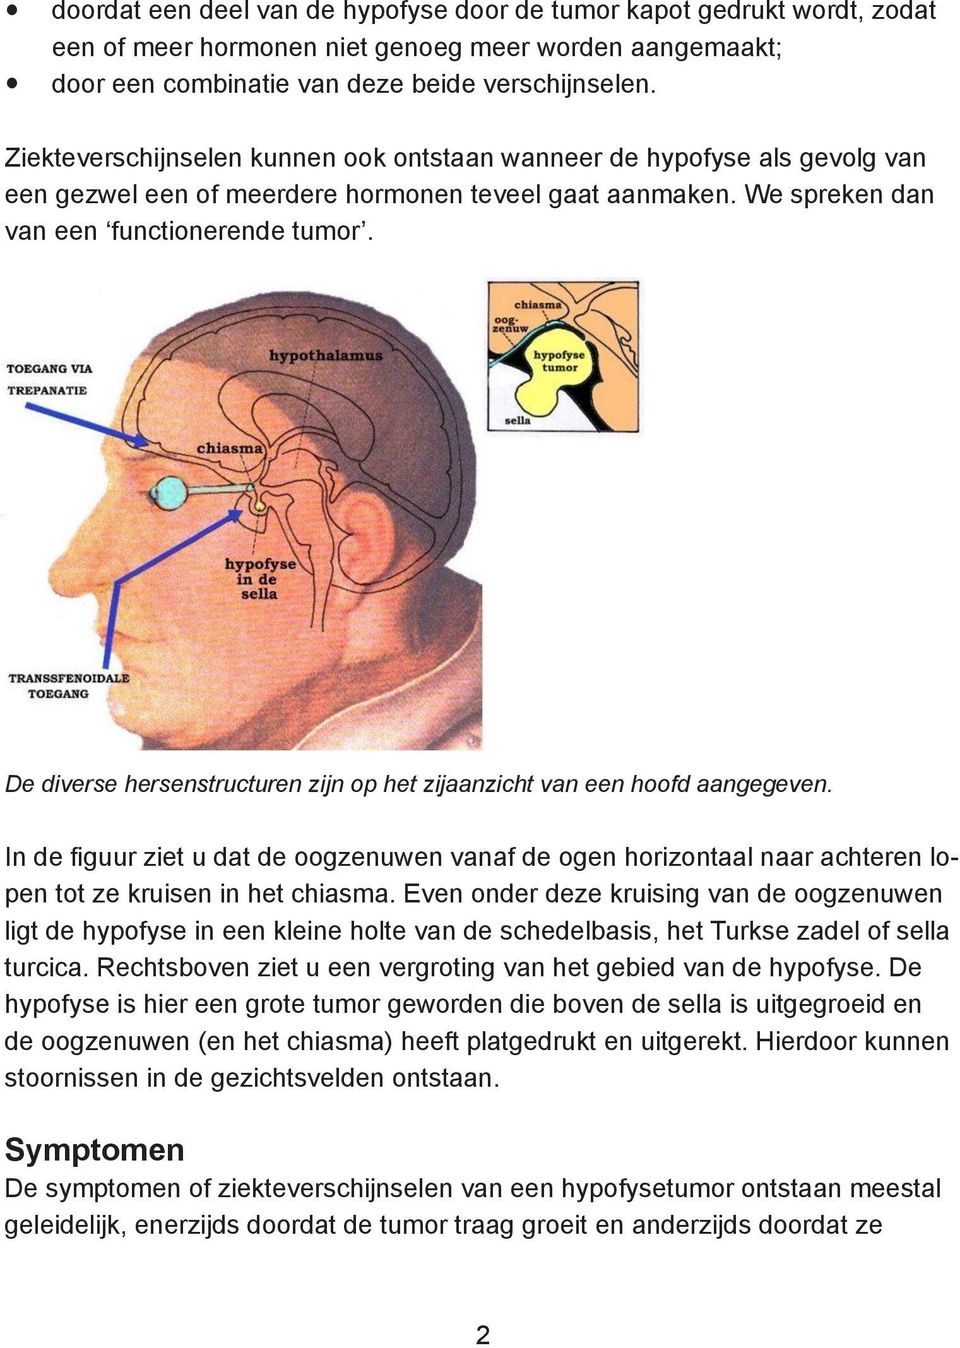 De diverse hersenstructuren zijn op het zijaanzicht van een hoofd aangegeven. In de figuur ziet u dat de oogzenuwen vanaf de ogen horizontaal naar achteren lopen tot ze kruisen in het chiasma.